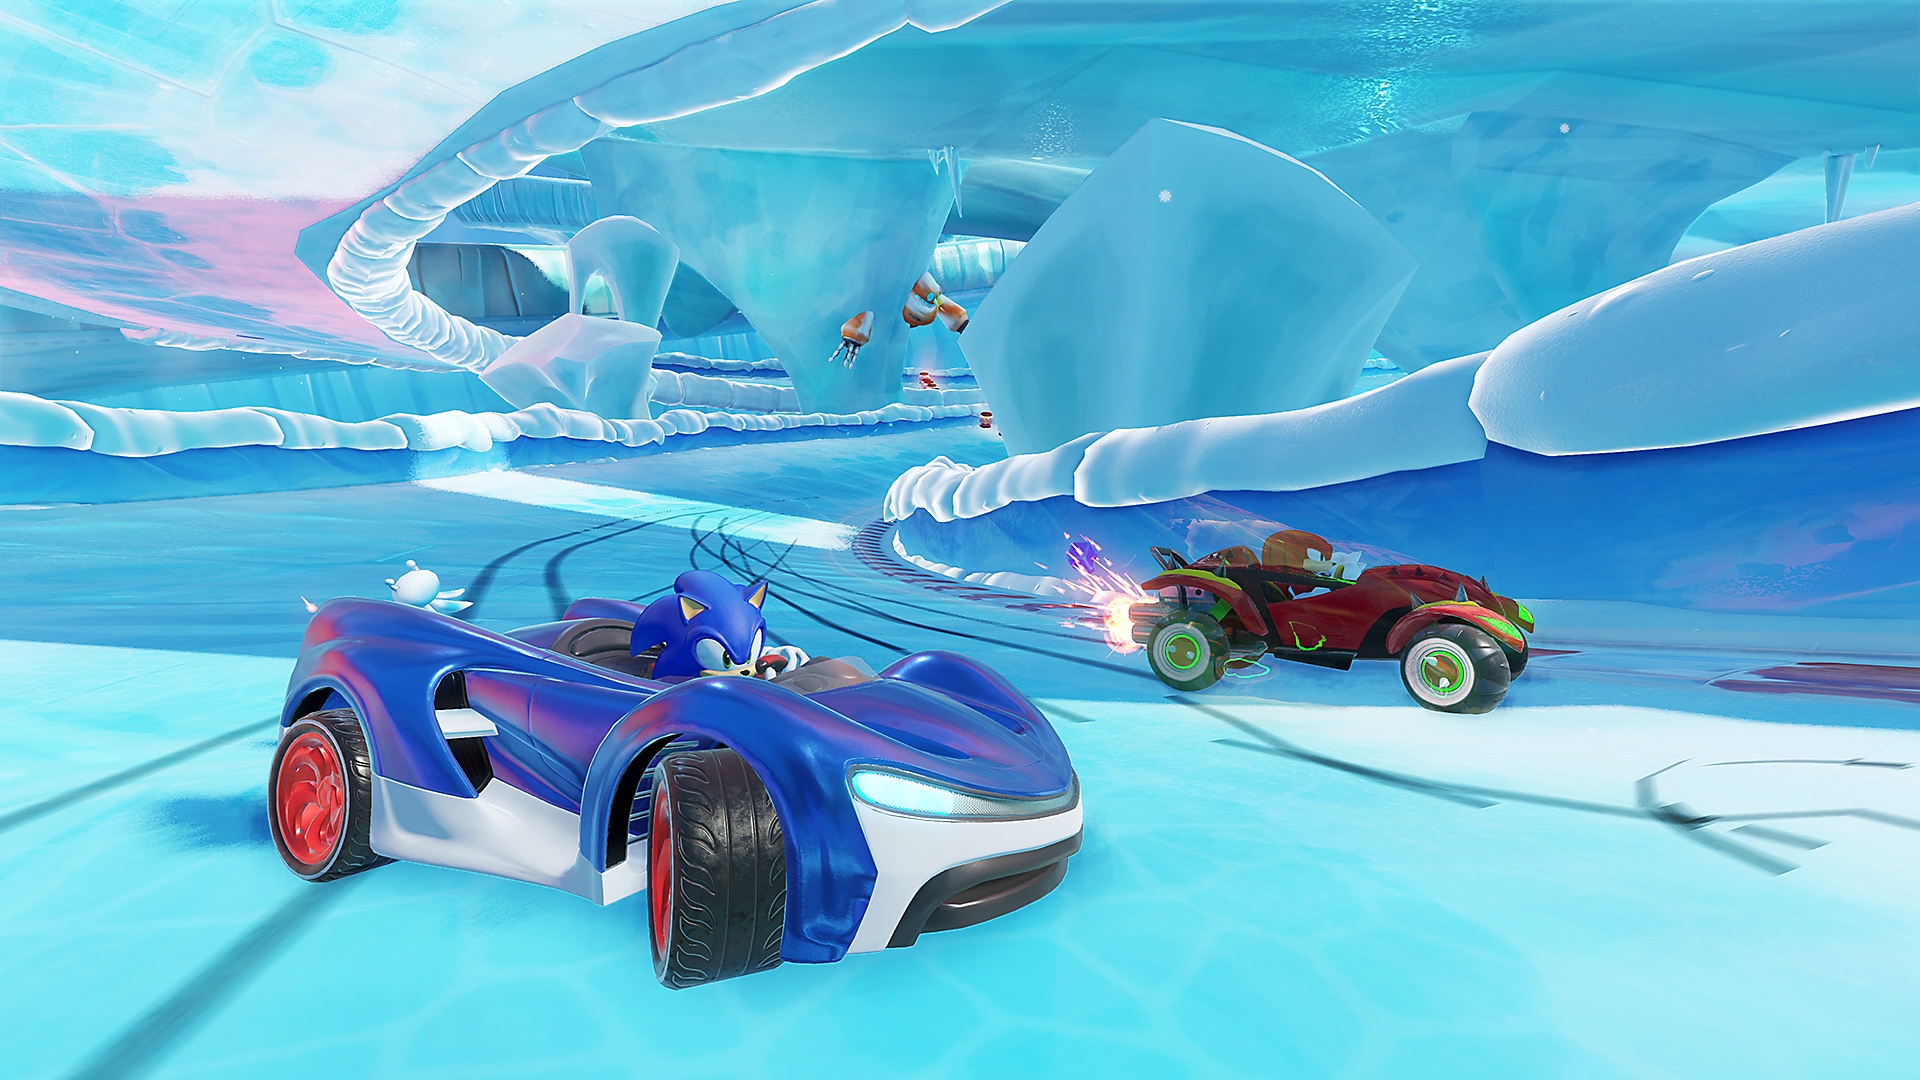 Team Sonic Racing – kuvakaappaus, jossa Sonic ajaa kilpaa sinisellä urheiluautolla jäisellä radalla